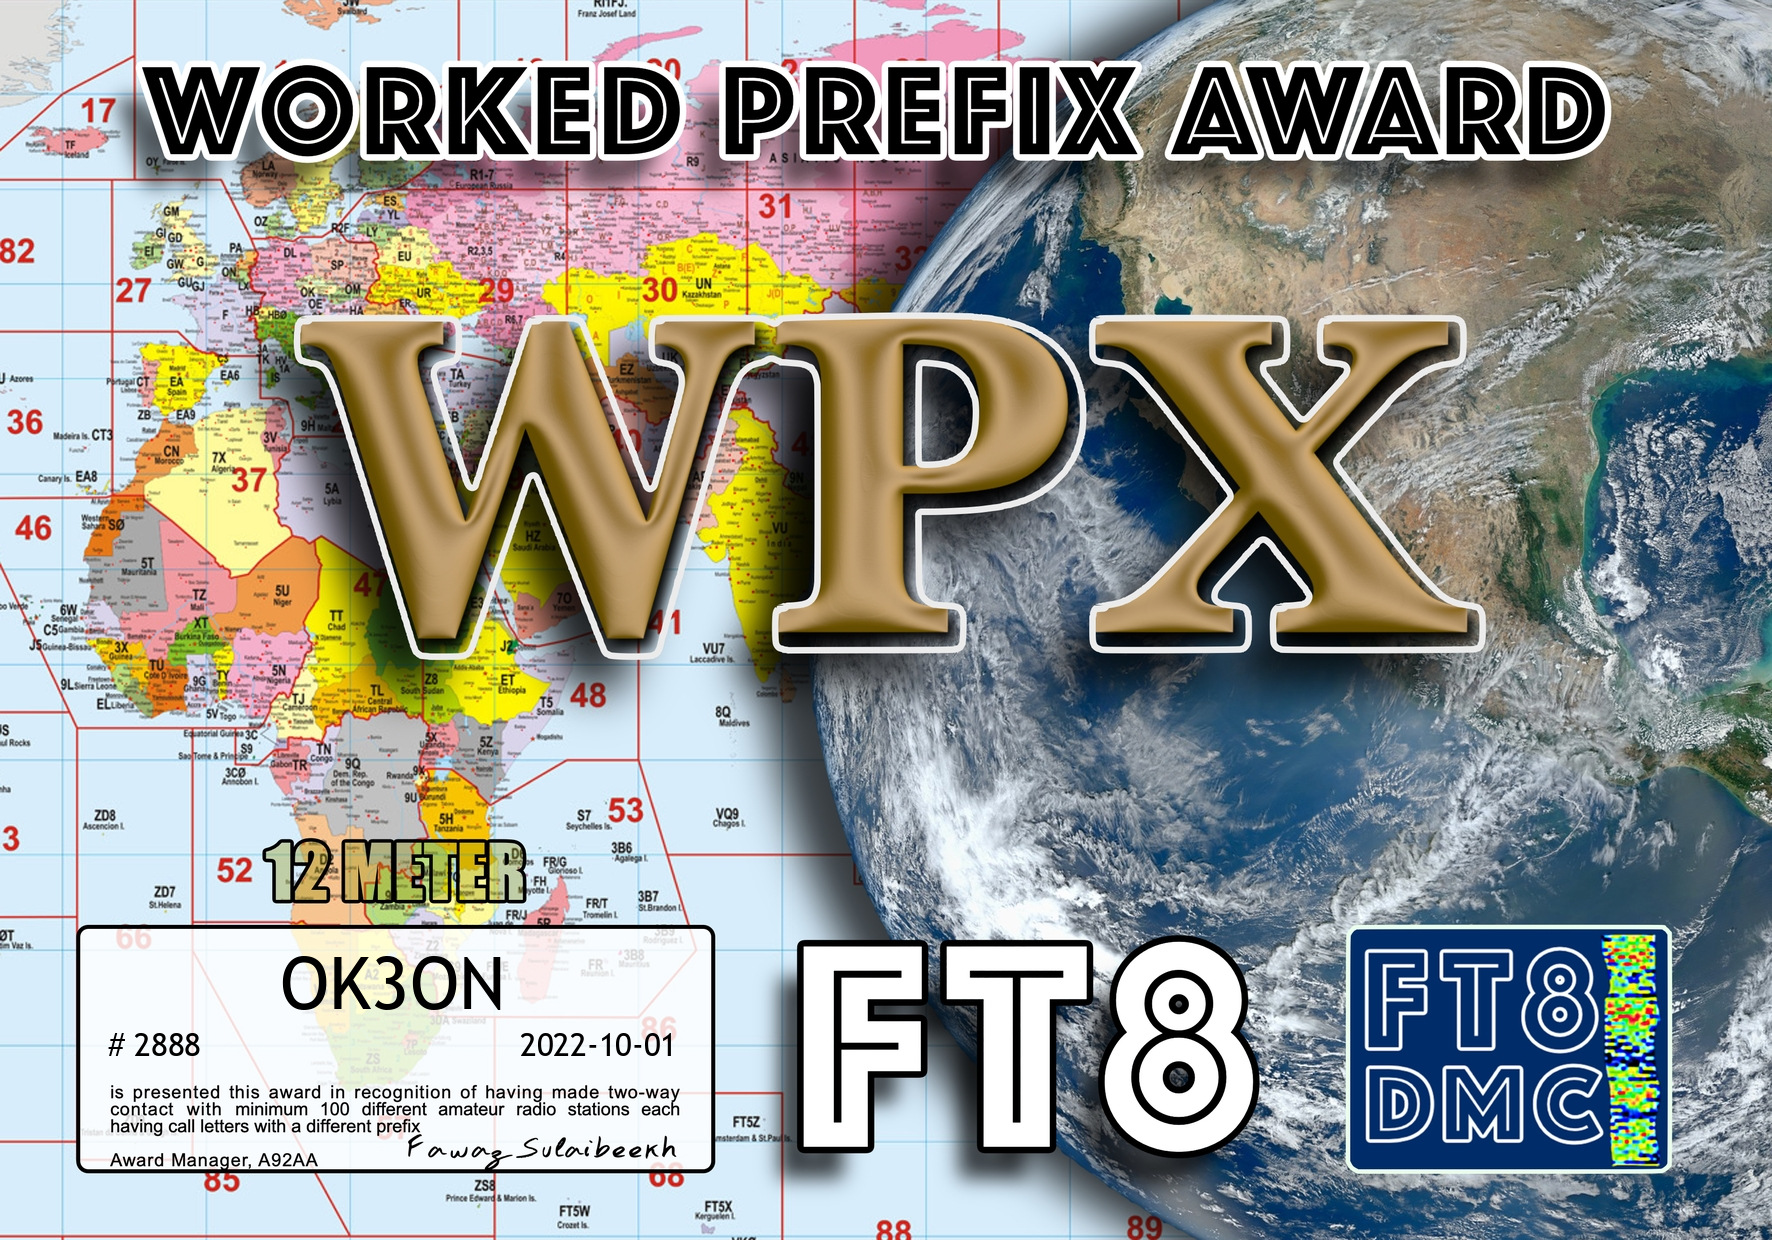 awards/OK3ON-WPX12-100_FT8DMC.jpg